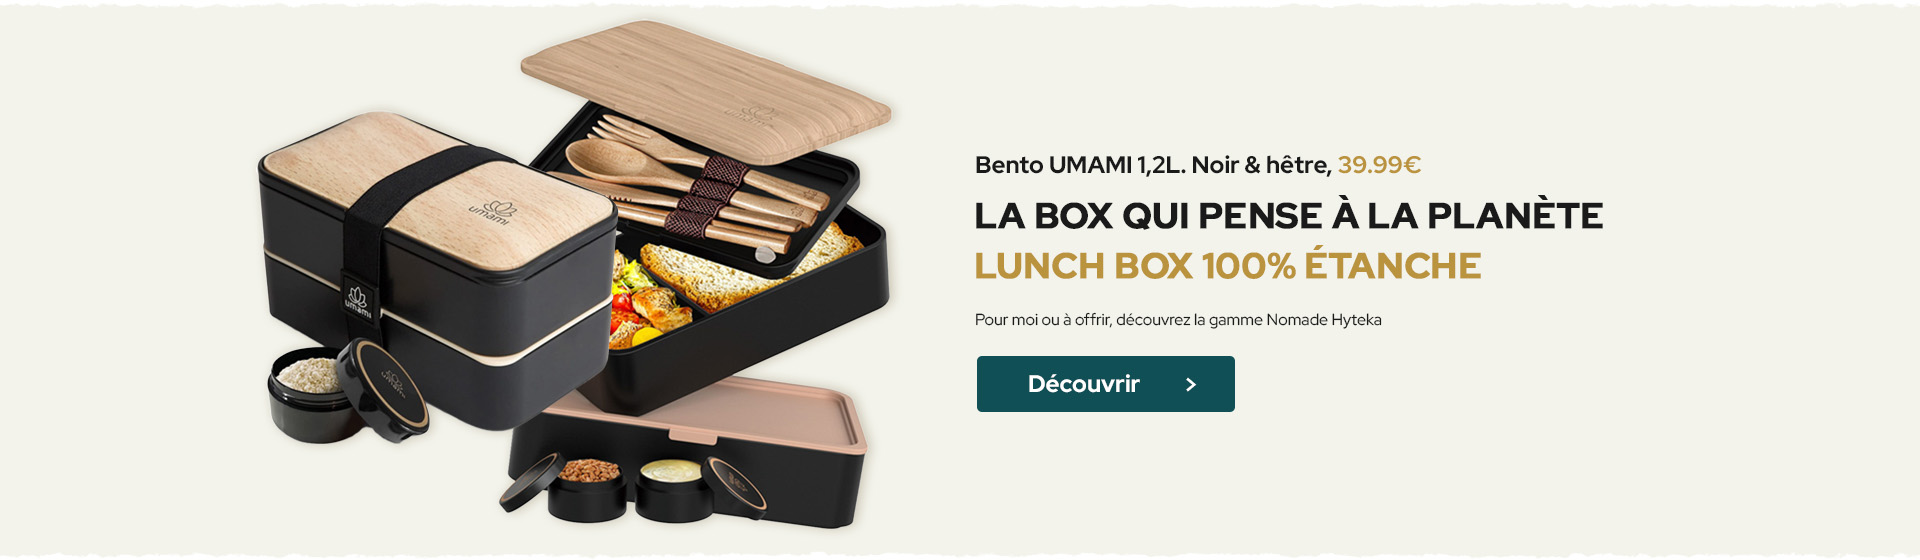 Bento Lunch Box 1,2L. Noir & hêtre. UMAMI